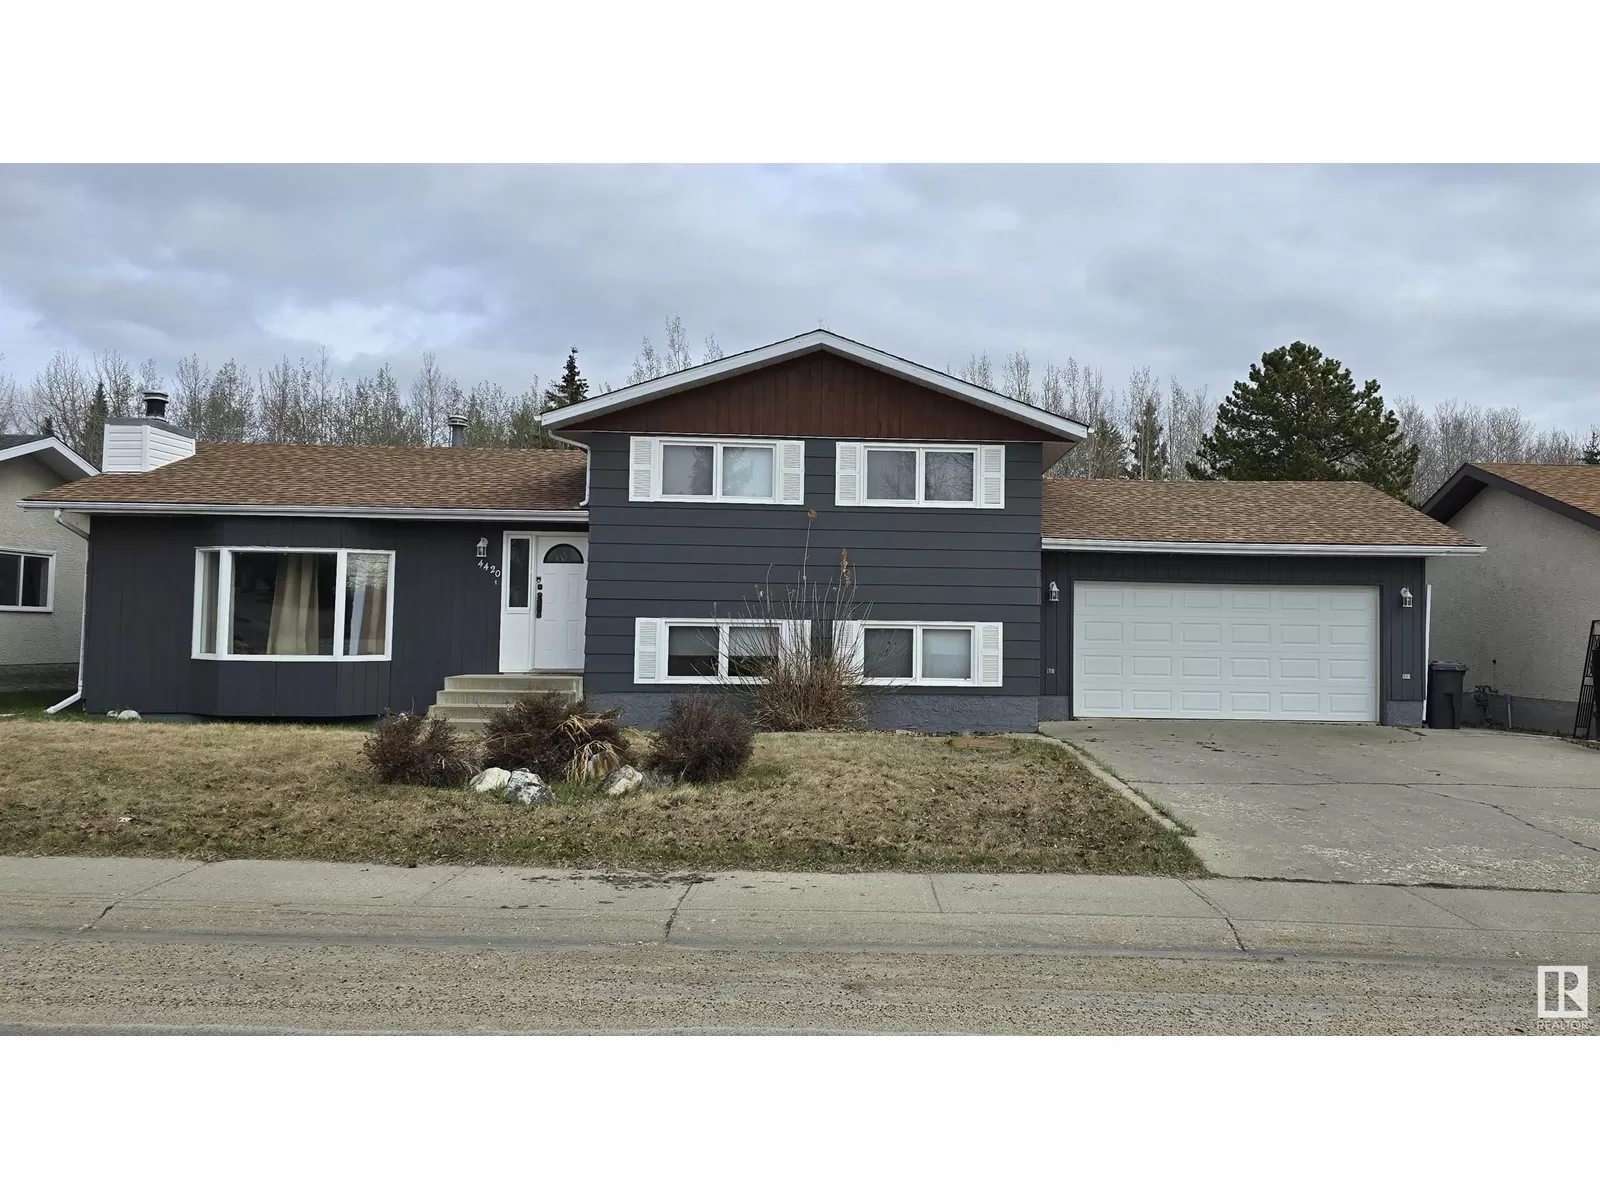 House for rent: 4420 Mackenzie Av, Drayton Valley, Alberta T7A 1A5